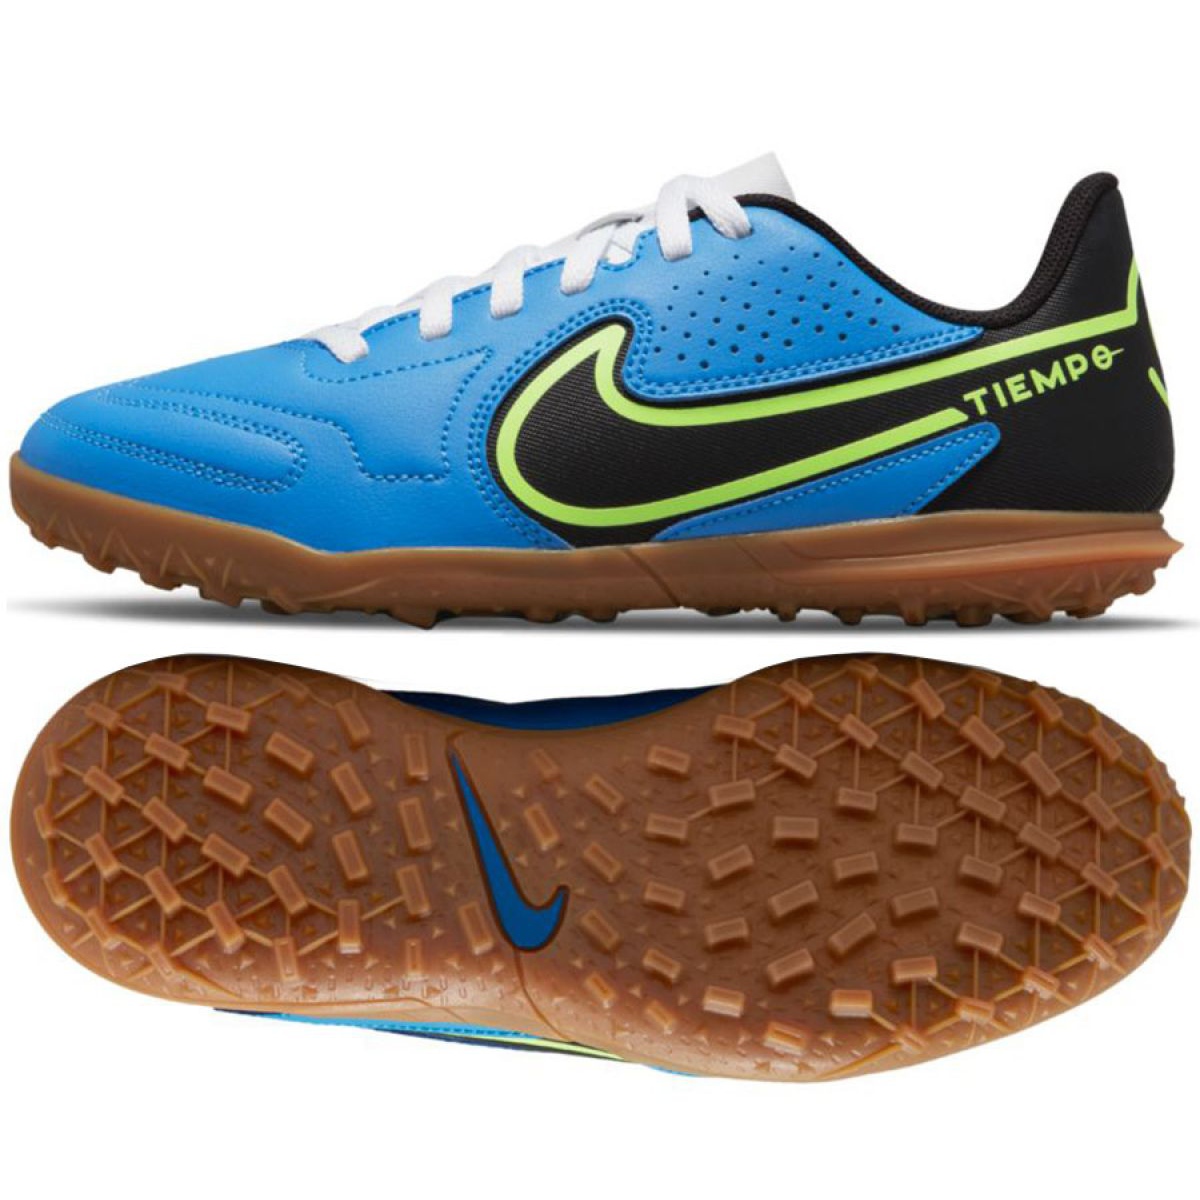 Buty piłkarskie Nike Tiempo Legend 9 Club Tf Jr DA1334 403 wielokolorowe niebieskie